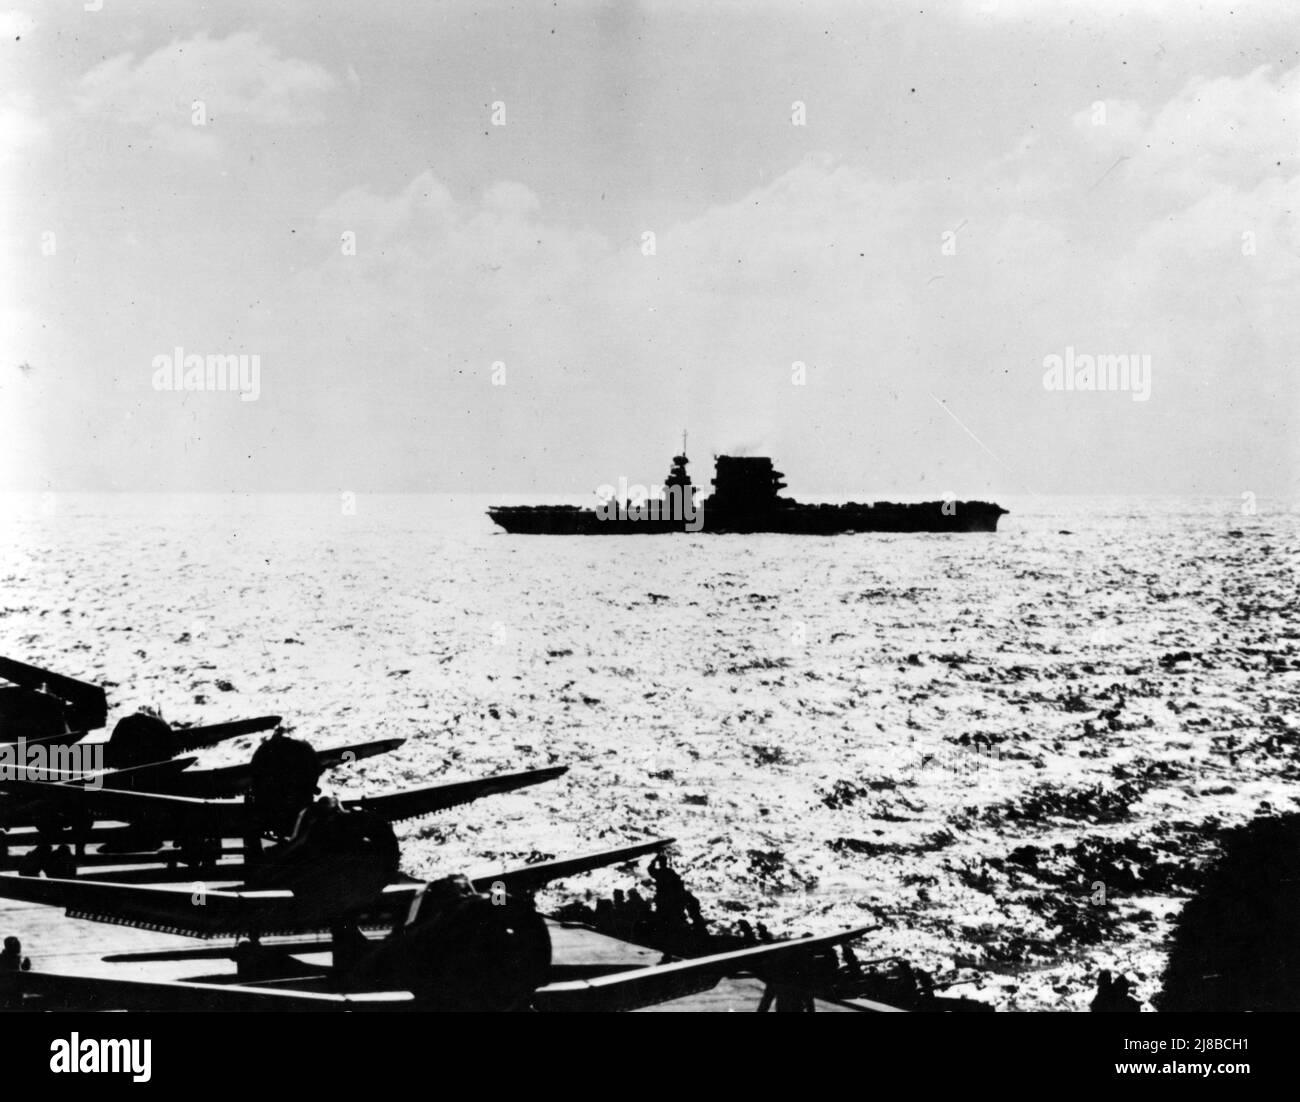 USS Lexington (CV-2) durante l'azione, visto da USS Yorktown (CV-5), 8 maggio 1942. Un gran numero di aerei sul ponte e il sole basso indicano che la foto è stata scattata al mattino presto, prima di lanciare lo sciopero contro la forza portante giapponese. Yorktown ha diversi SBD e F4Fs sul ponte con motori in funzione, apparentemente in preparazione al decollo. Lexington, la cui silhouette è stata alterata dalla rimozione precedente delle torrette da 8 pollici, ha aerei parcheggiati in avanti e indietro, e può essere respirare il suo ponte in preparazione per il lancio di aerei. Foto Stock